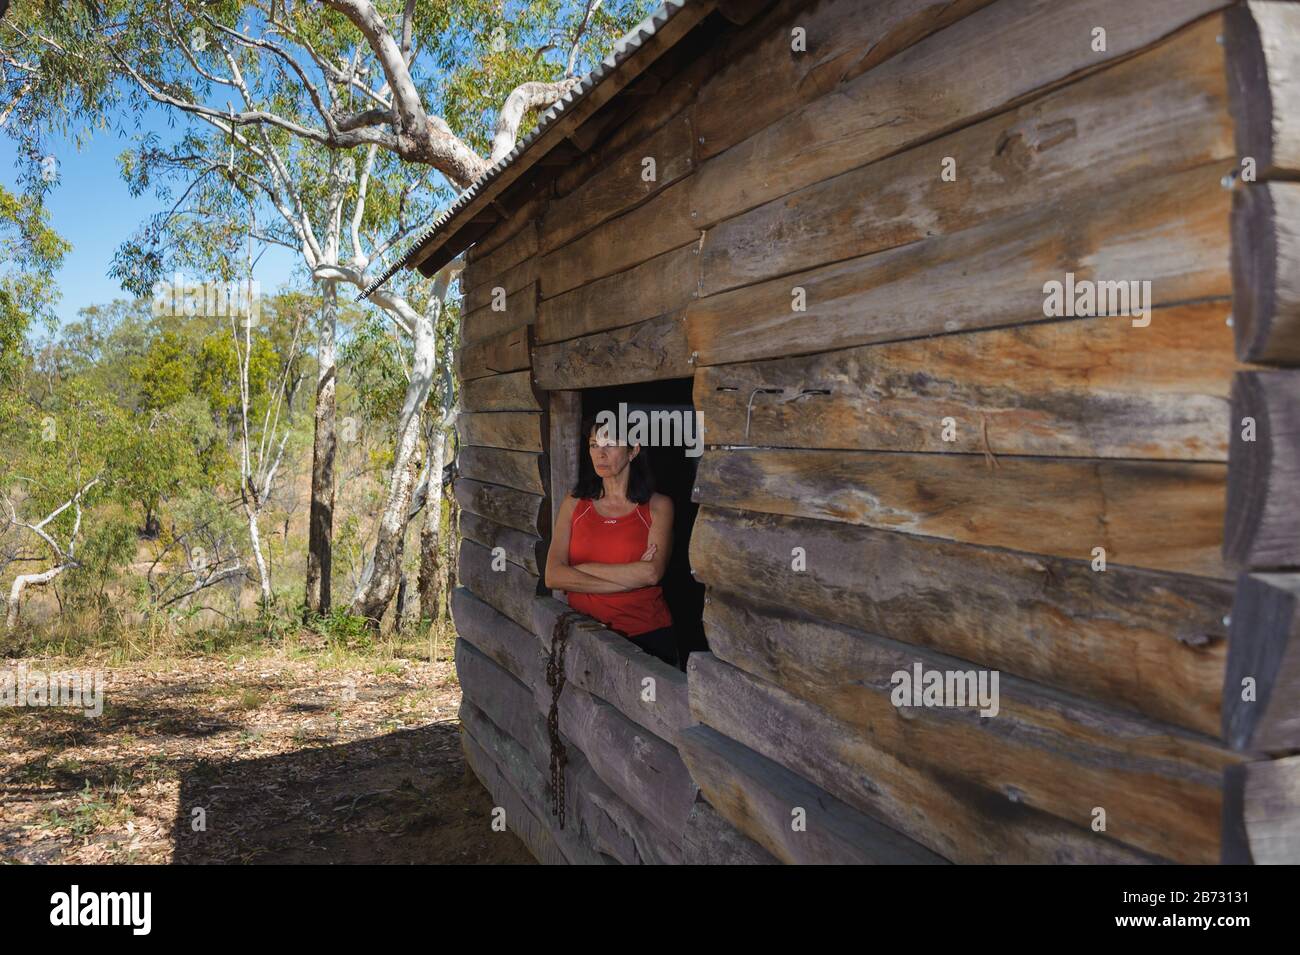 Les colons historiques de log de réplique hutte avec des touristes femelles dans un cadre de fenêtre ouverte donnant sur la forêt de sclérophylle environnante. Banque D'Images